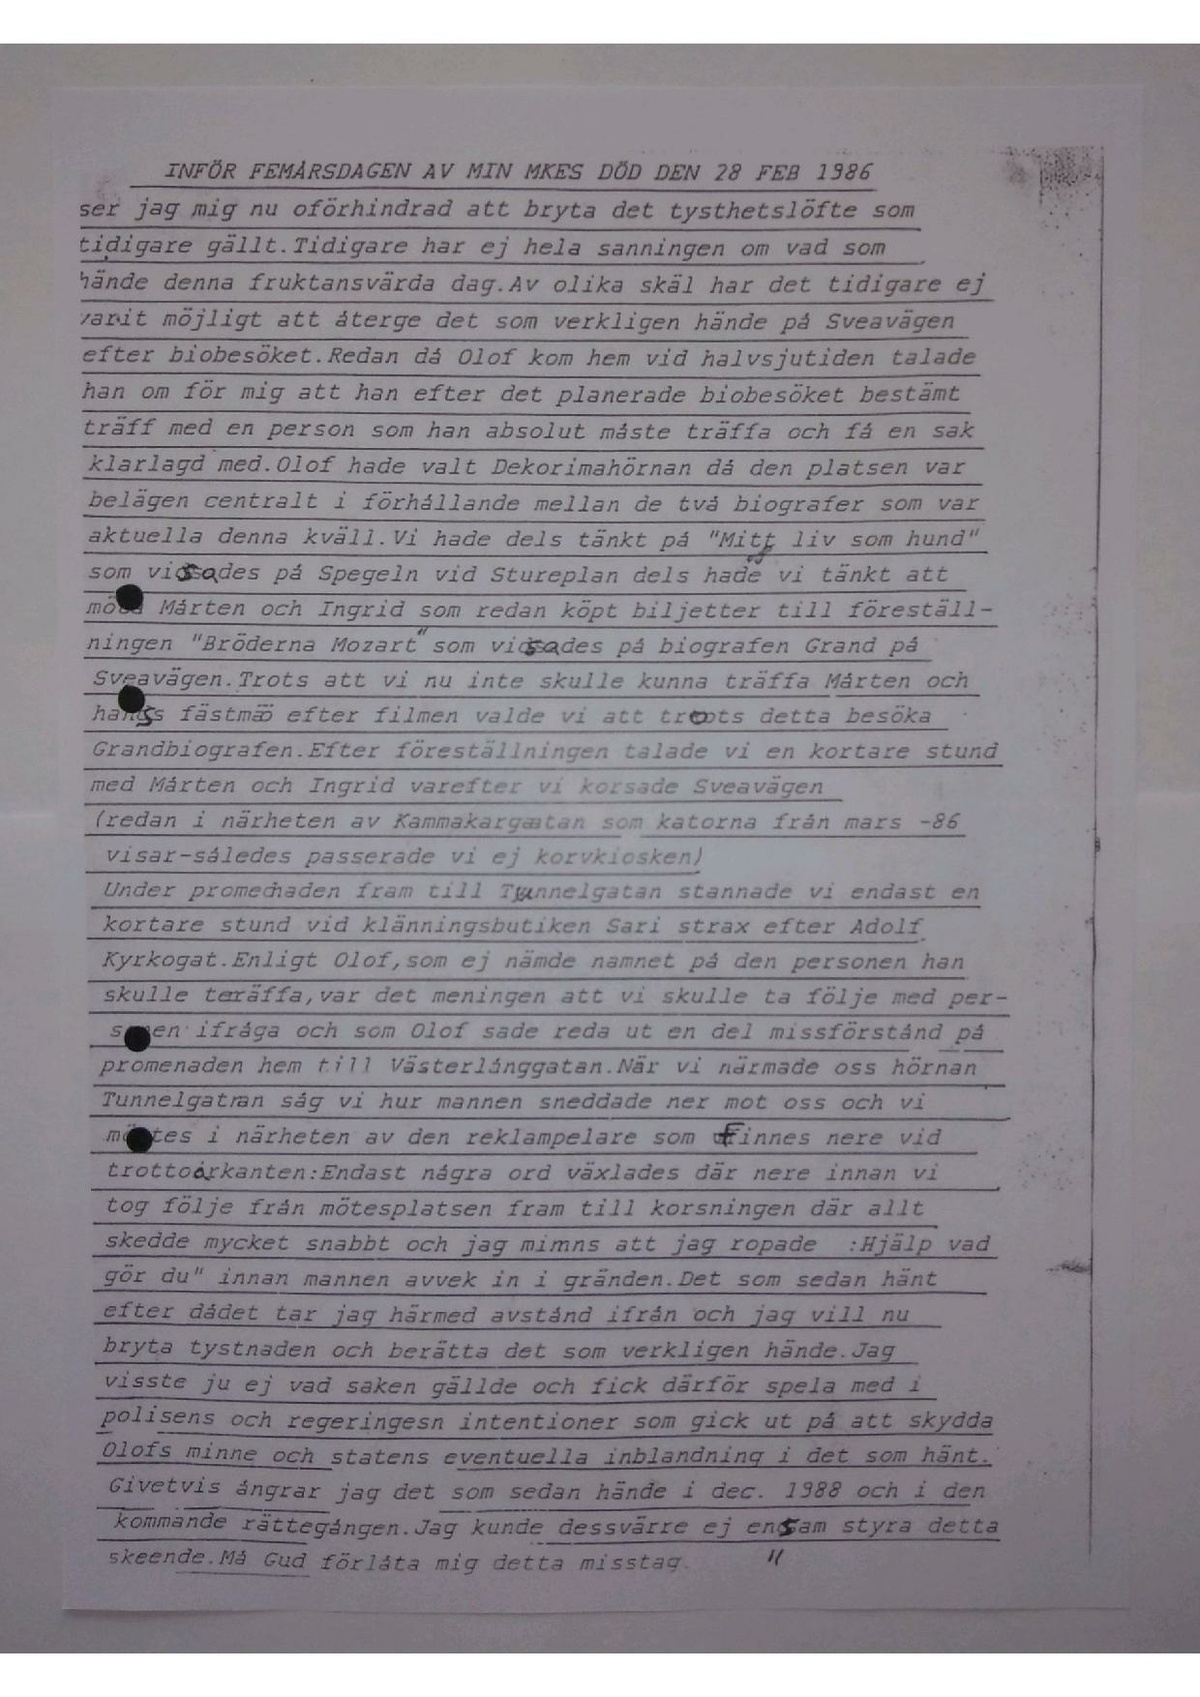 Pol-1991-11-15 D14091-00 Anonyma-brev-Lisbet-Palme.pdf